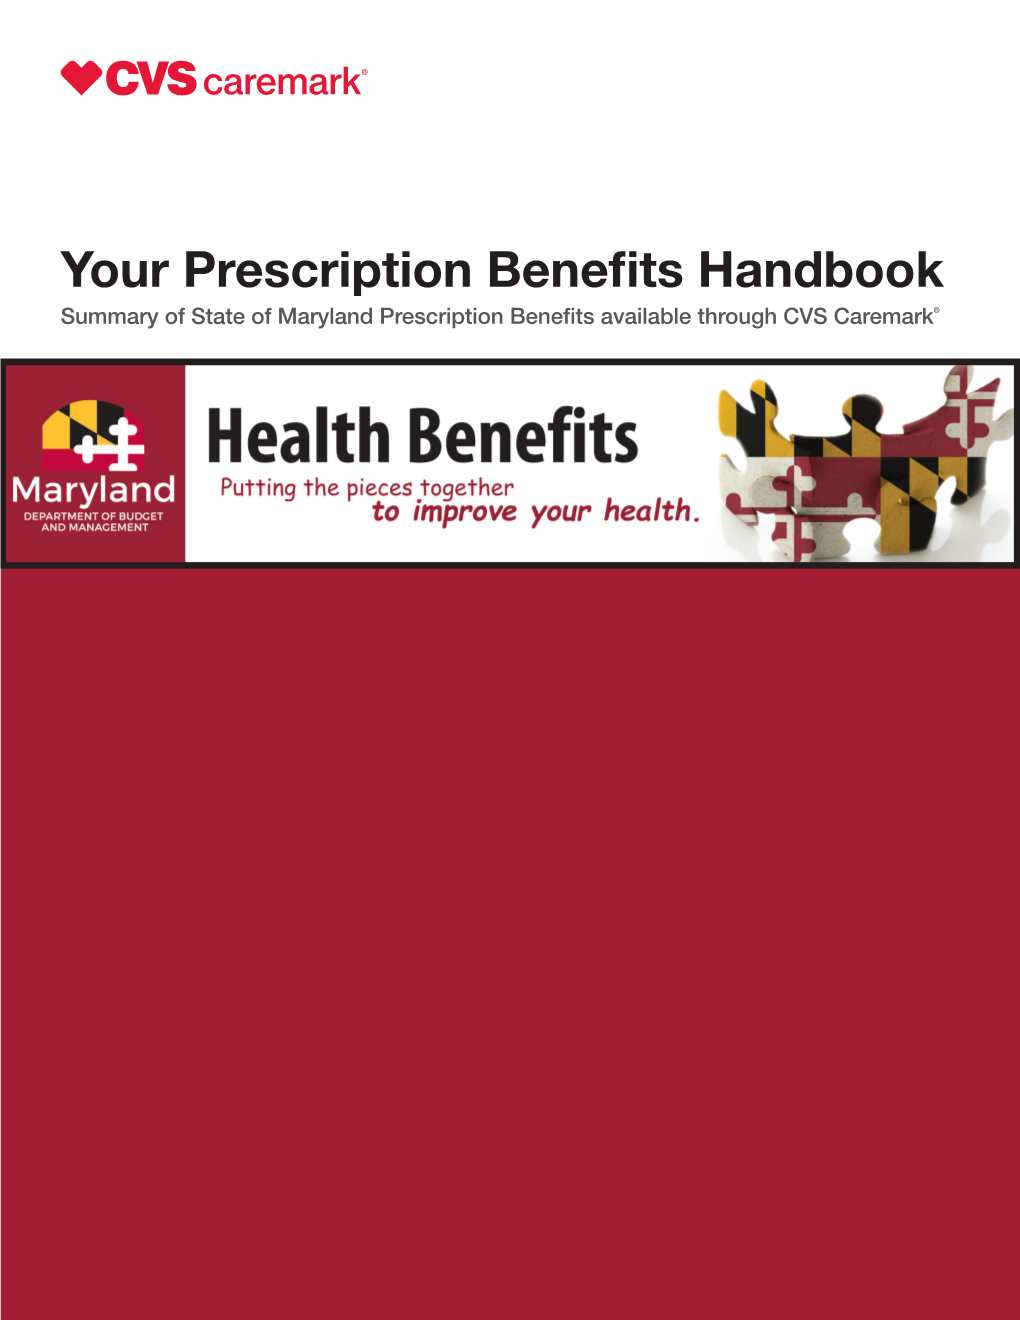 CY20 Prescription Drug Coverage CVS Healthcare Handbook